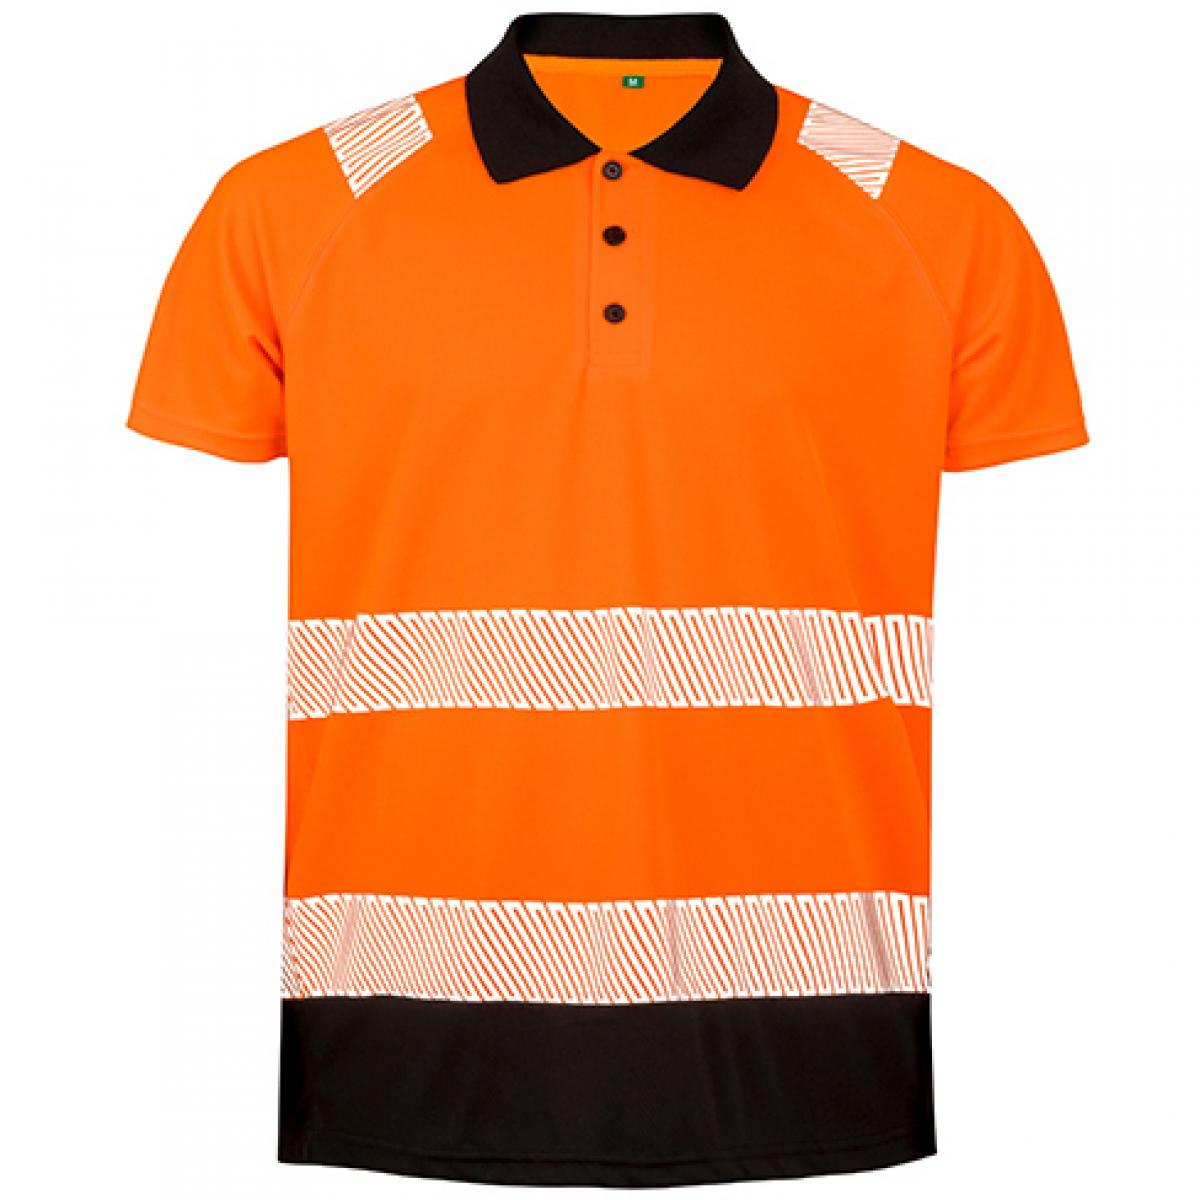 Hersteller: Result Genuine Recycled Herstellernummer: R501X Artikelbezeichnung: Recycled Safety Polo Shirt - Schnell trocknend Farbe: Fluorescent Orange/Black